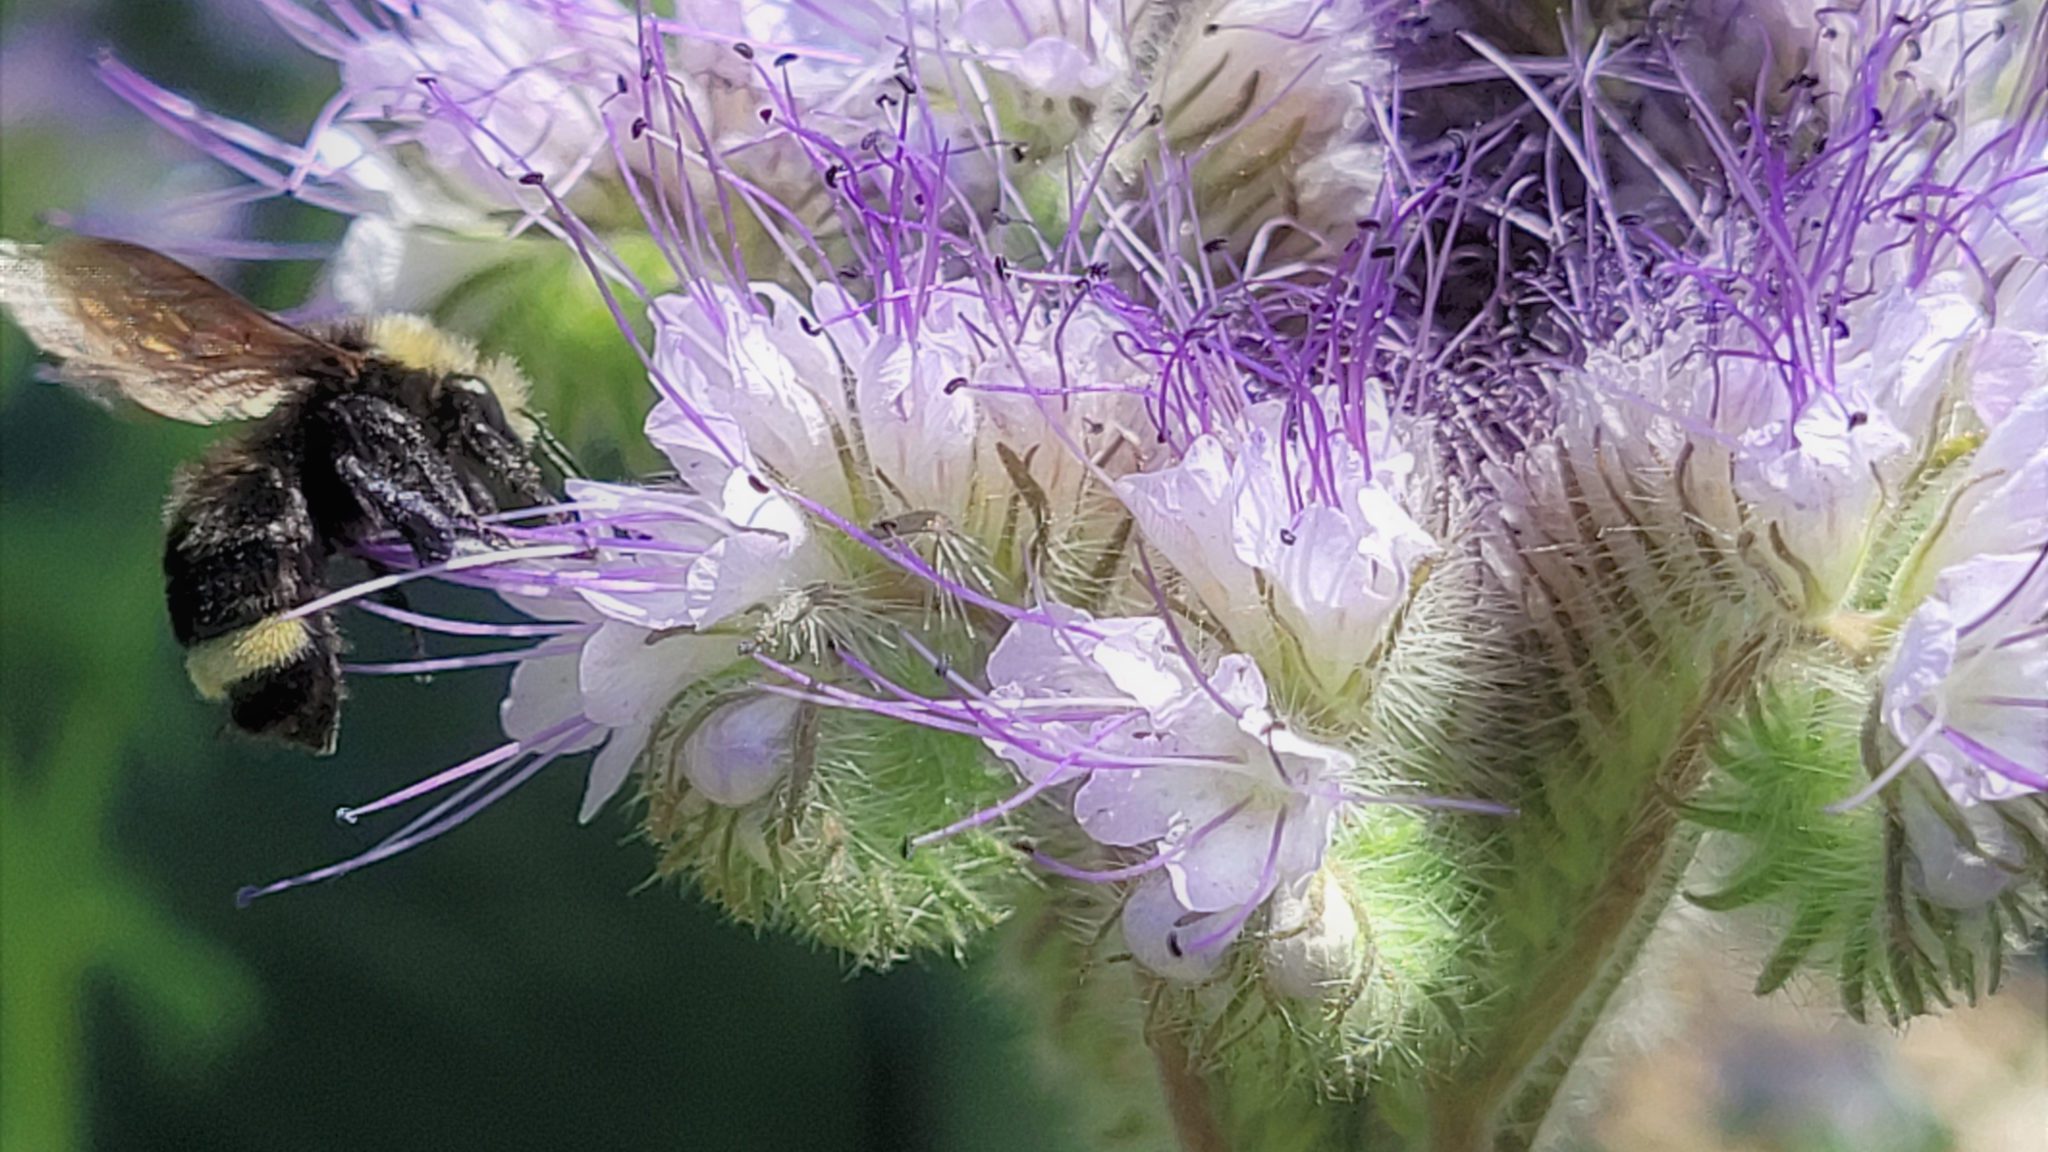 Bee landing on a flower